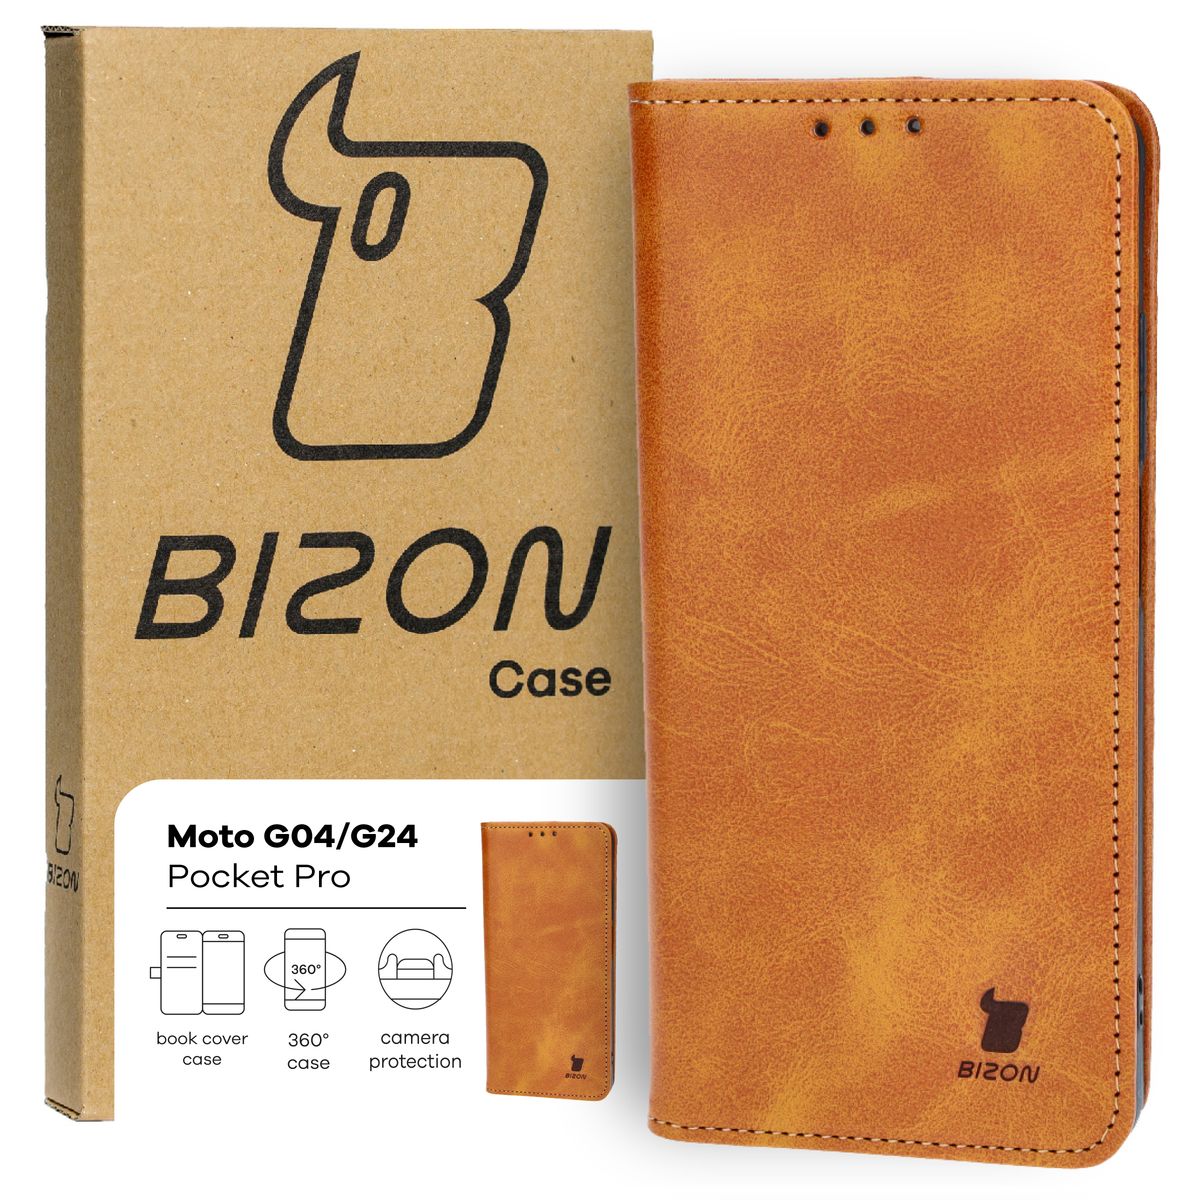 Schutzhülle für Motorola Moto G04 / G24, Bizon Case Pocket Pro, Braun